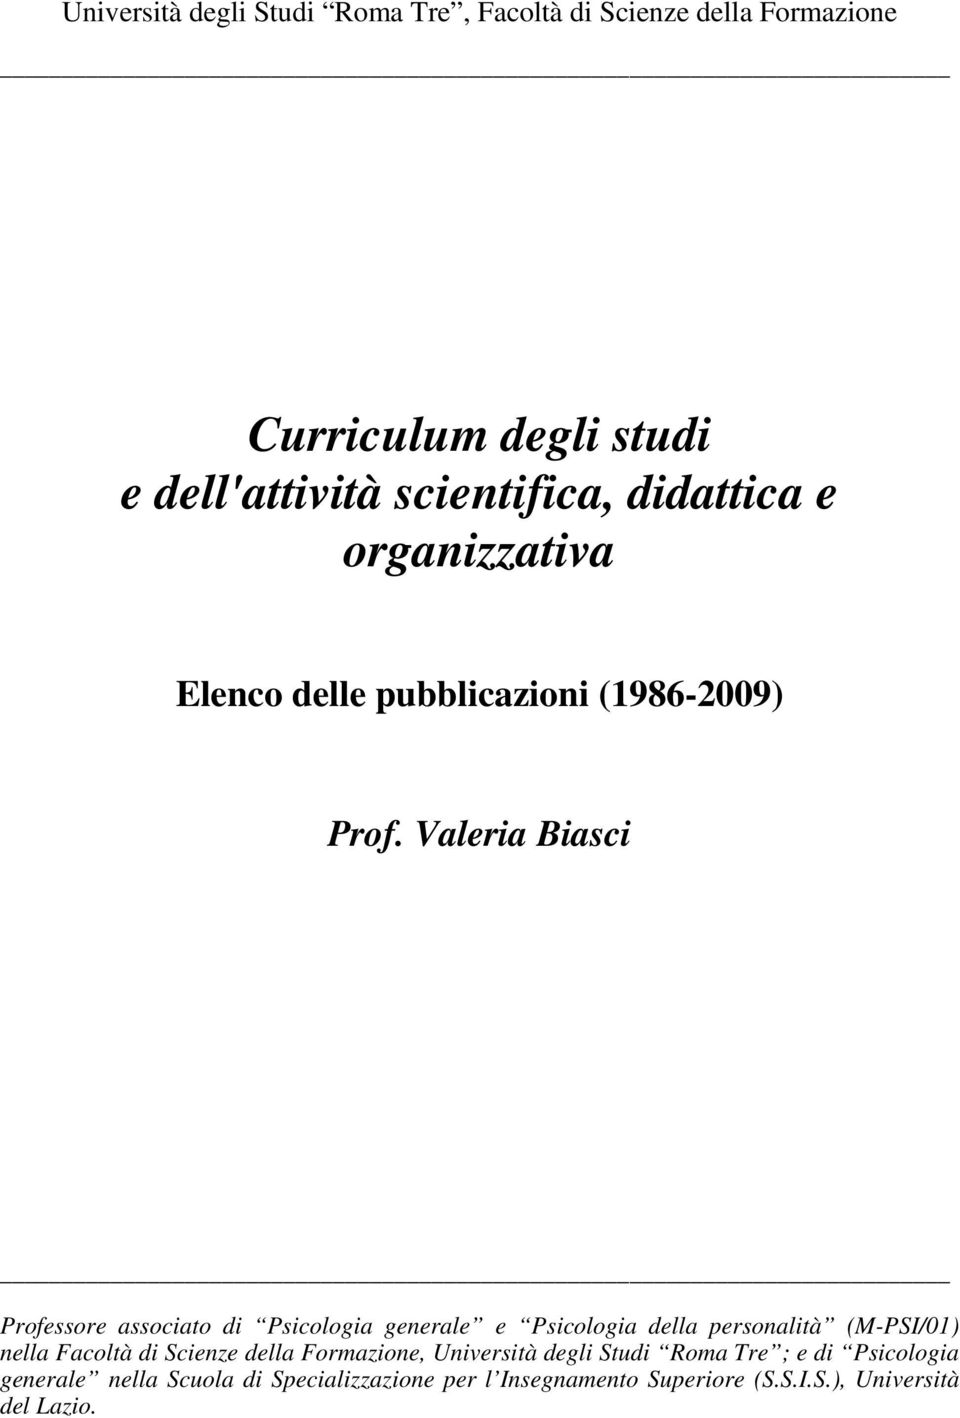 Valeria Biasci Professore associato di Psicologia generale e Psicologia della personalità (M-PSI/01) nella Facoltà di